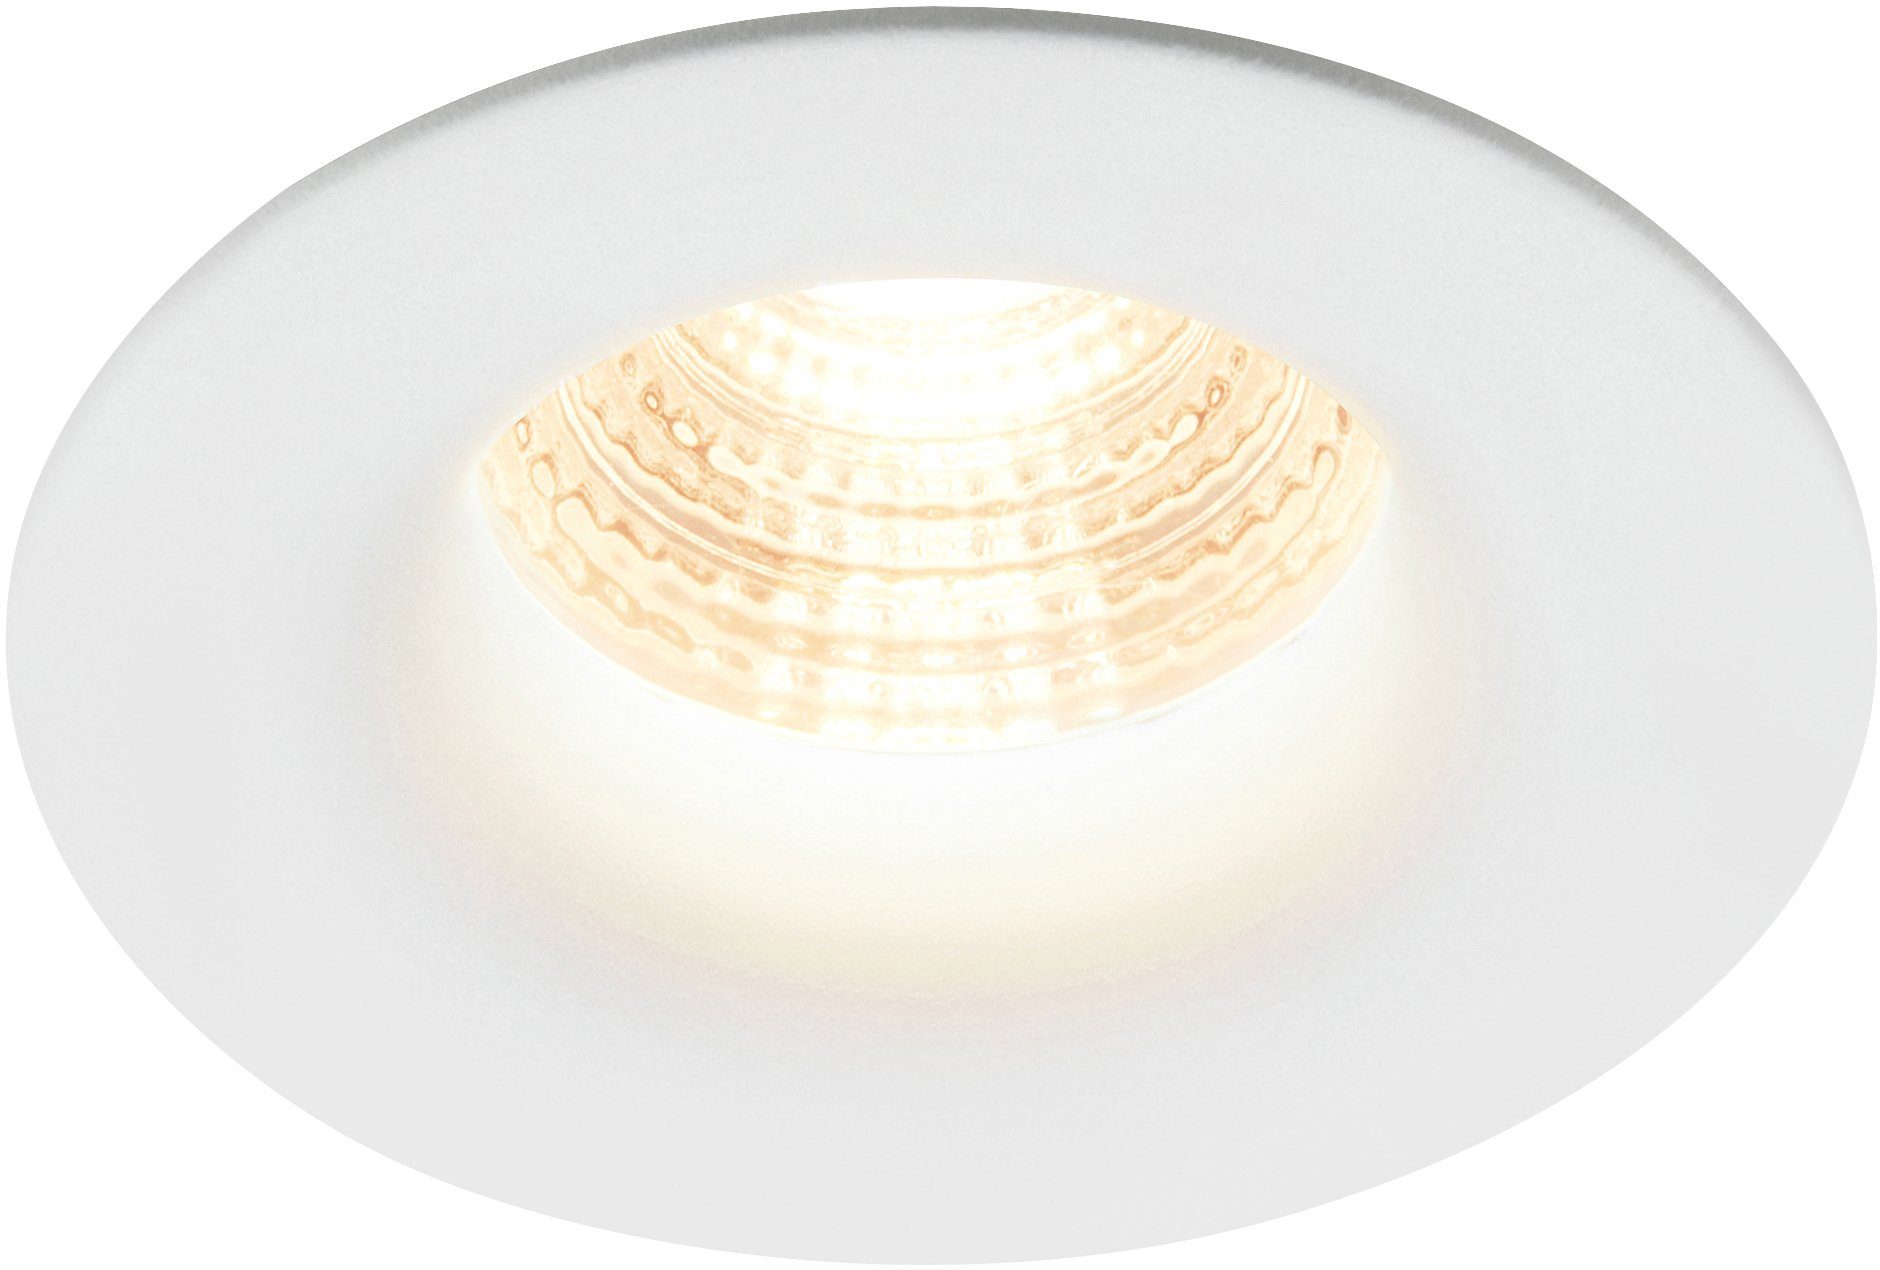 Nordlux Deckenstrahler Starke, Dimmbar, Warmweiß, 6,1W inkl. LED, Lebensdauer integriert, 450 fest LED Lumen, 20.000h